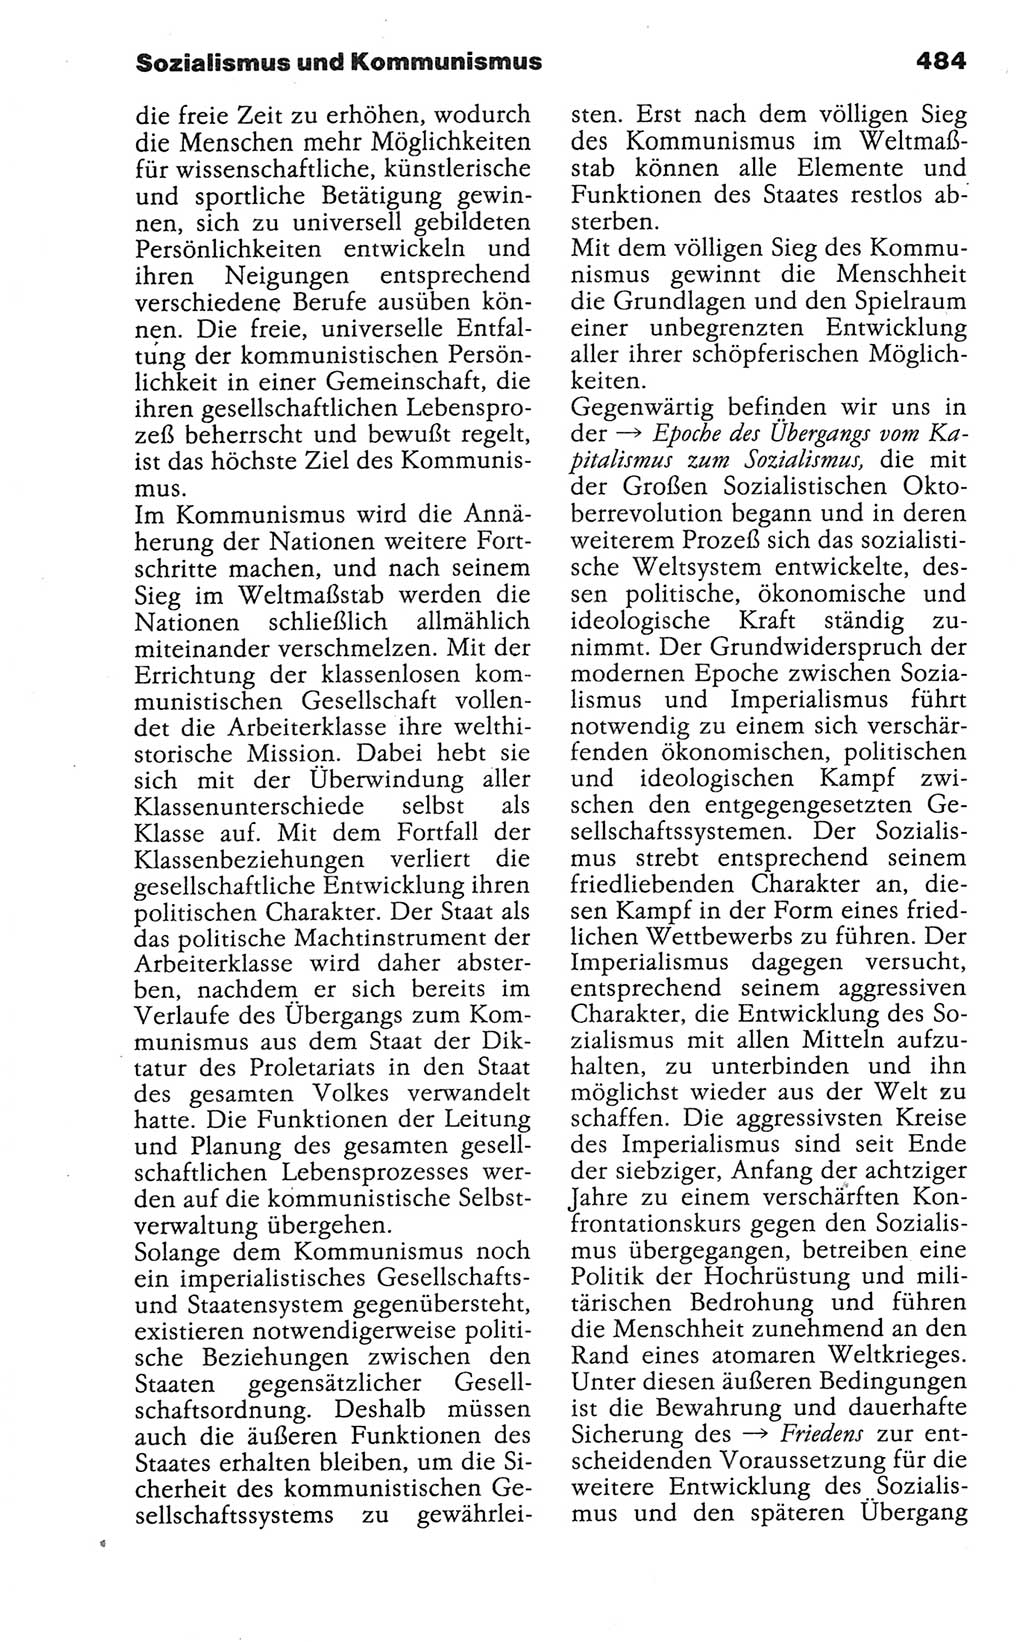 Wörterbuch der marxistisch-leninistischen Philosophie [Deutsche Demokratische Republik (DDR)] 1986, Seite 484 (Wb. ML Phil. DDR 1986, S. 484)